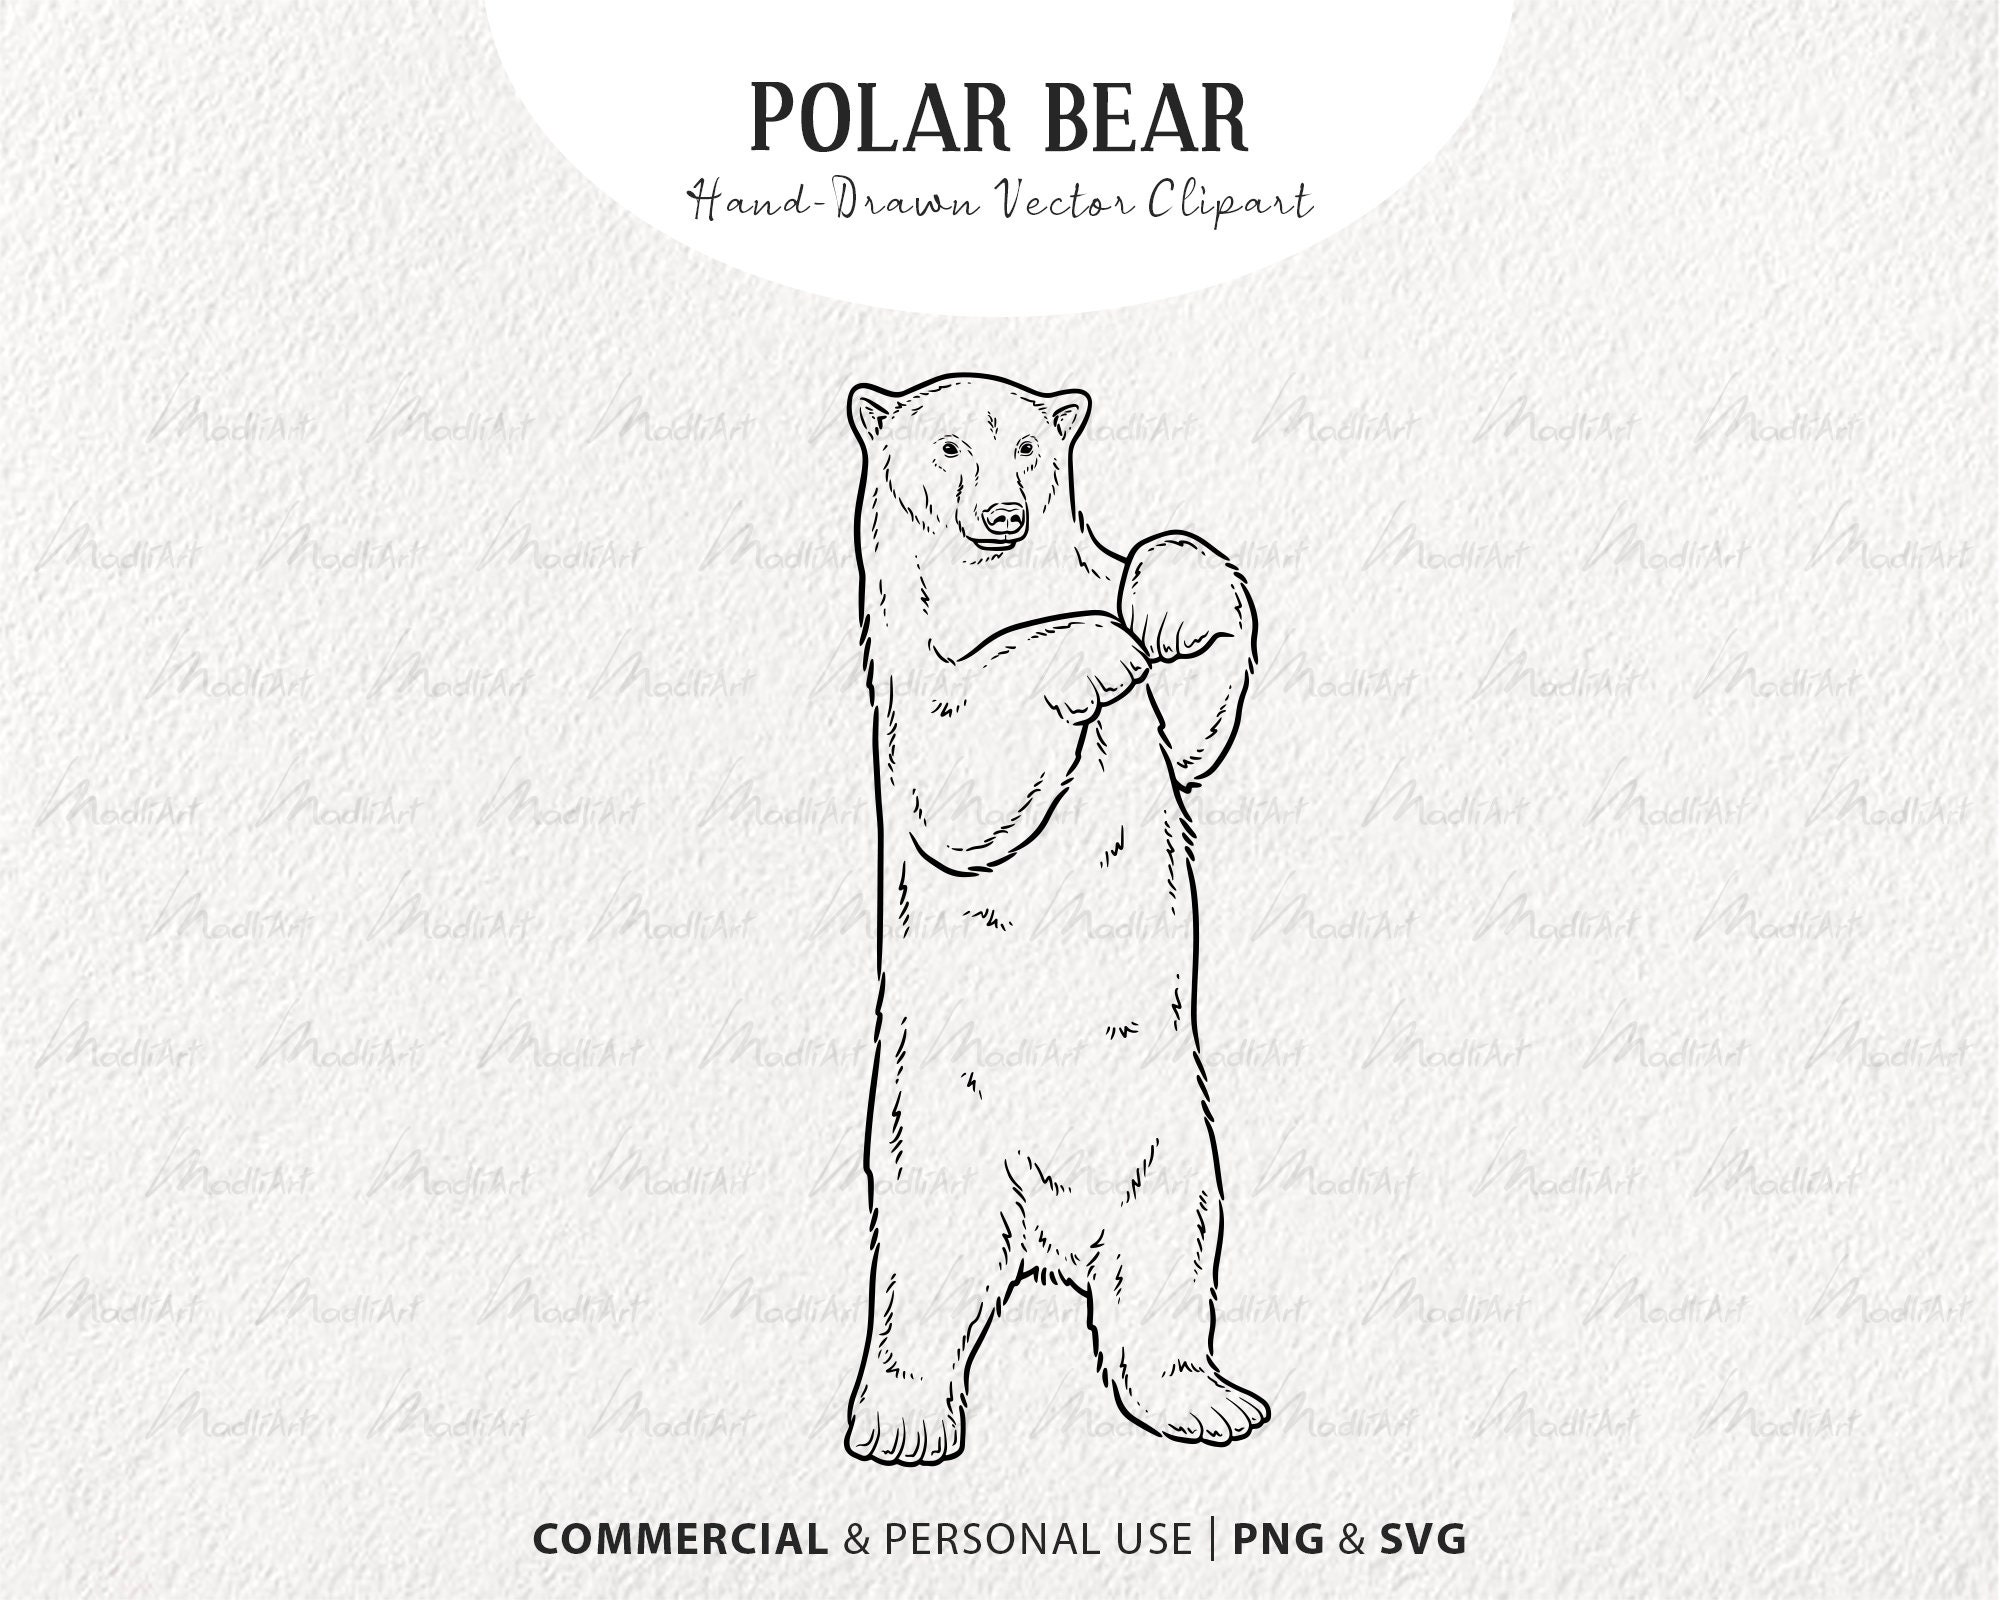 Charles Frace, POLAR BEAR Sketch Print | eBay